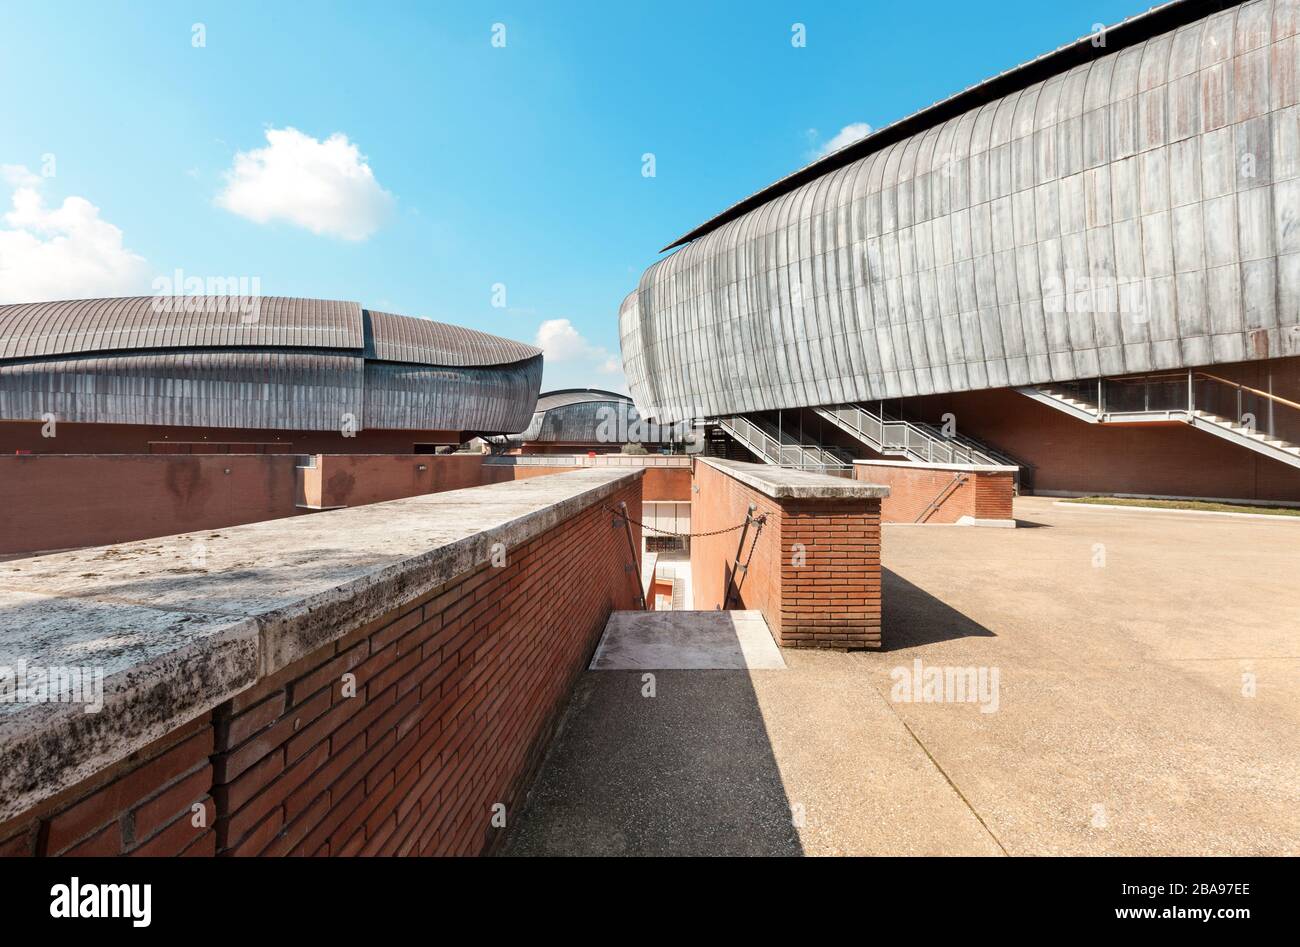 ROMA, ITALIA - 14 DE MARZO de 2015: Vista desde el exterior del Auditorio Parco della Musica, estructura dedicada exclusivamente al arte arquitecto Renzo Piano Foto de stock